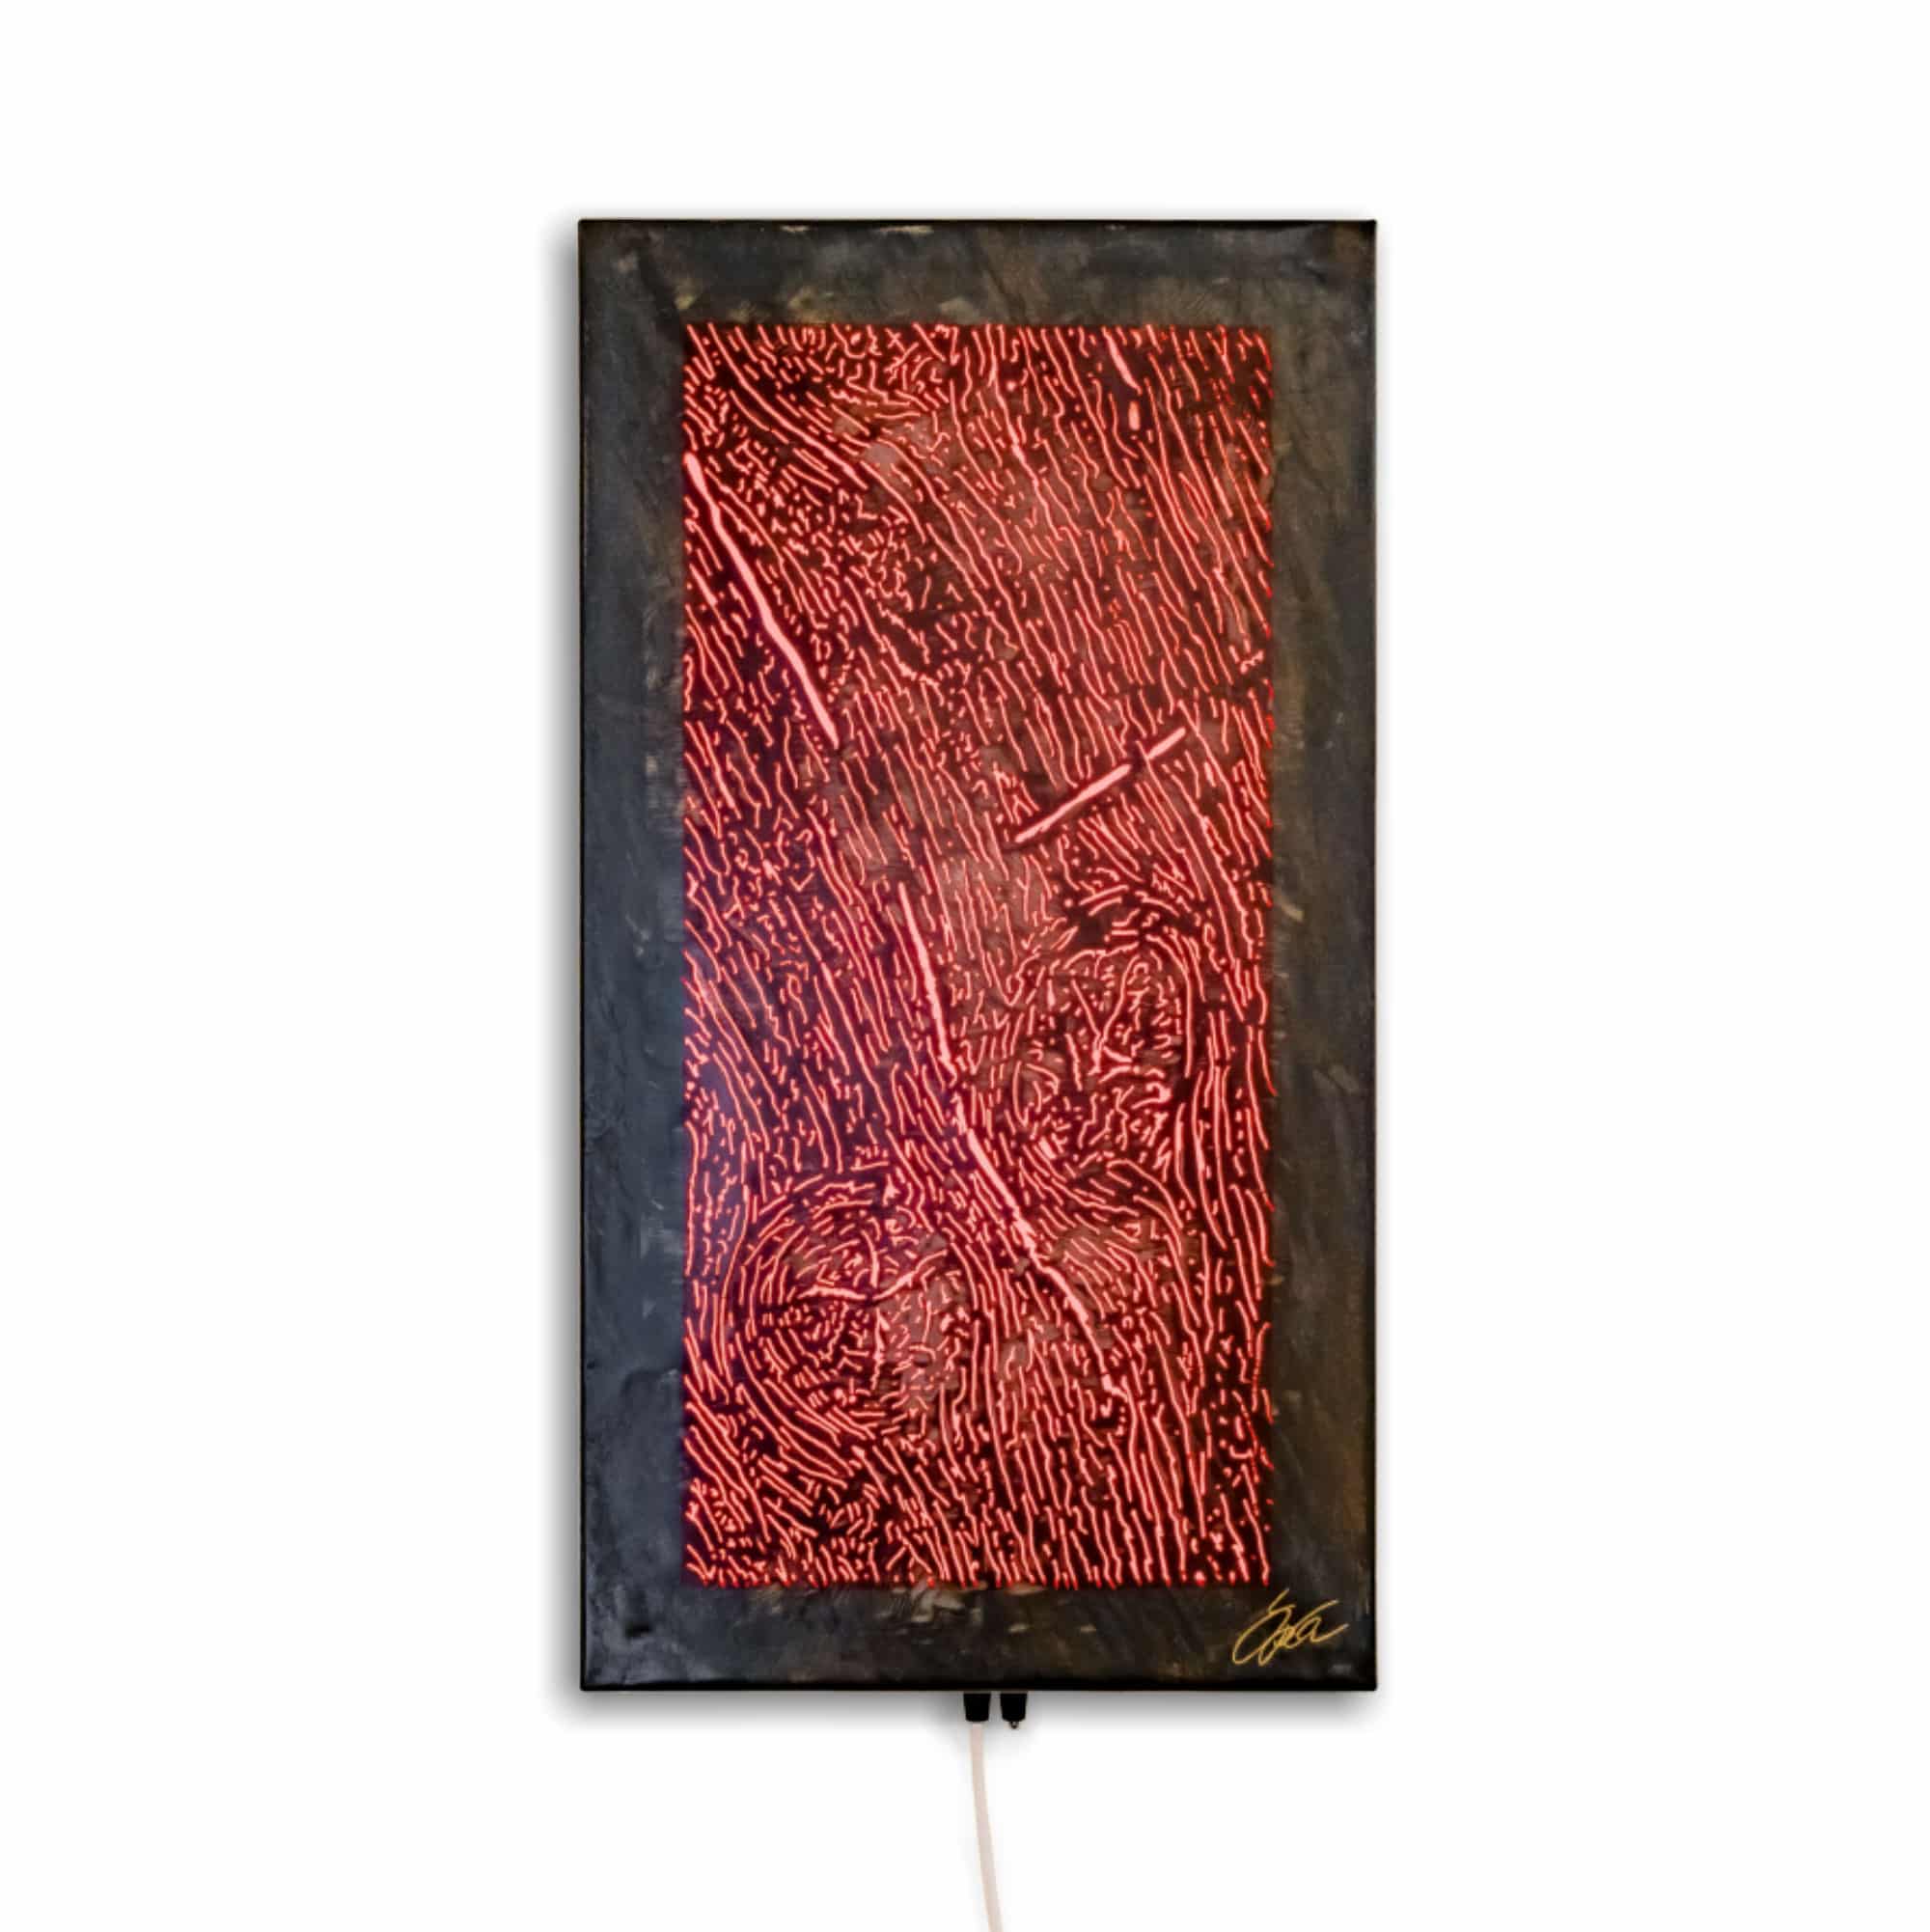 Stahlbild bzw. Bild aus Metall mit dem Namen "Wood" aus der Reihe „noch mehr“ von Daniel Springer. Stahlbild in Holzoptik mit RGB Beleuchtung